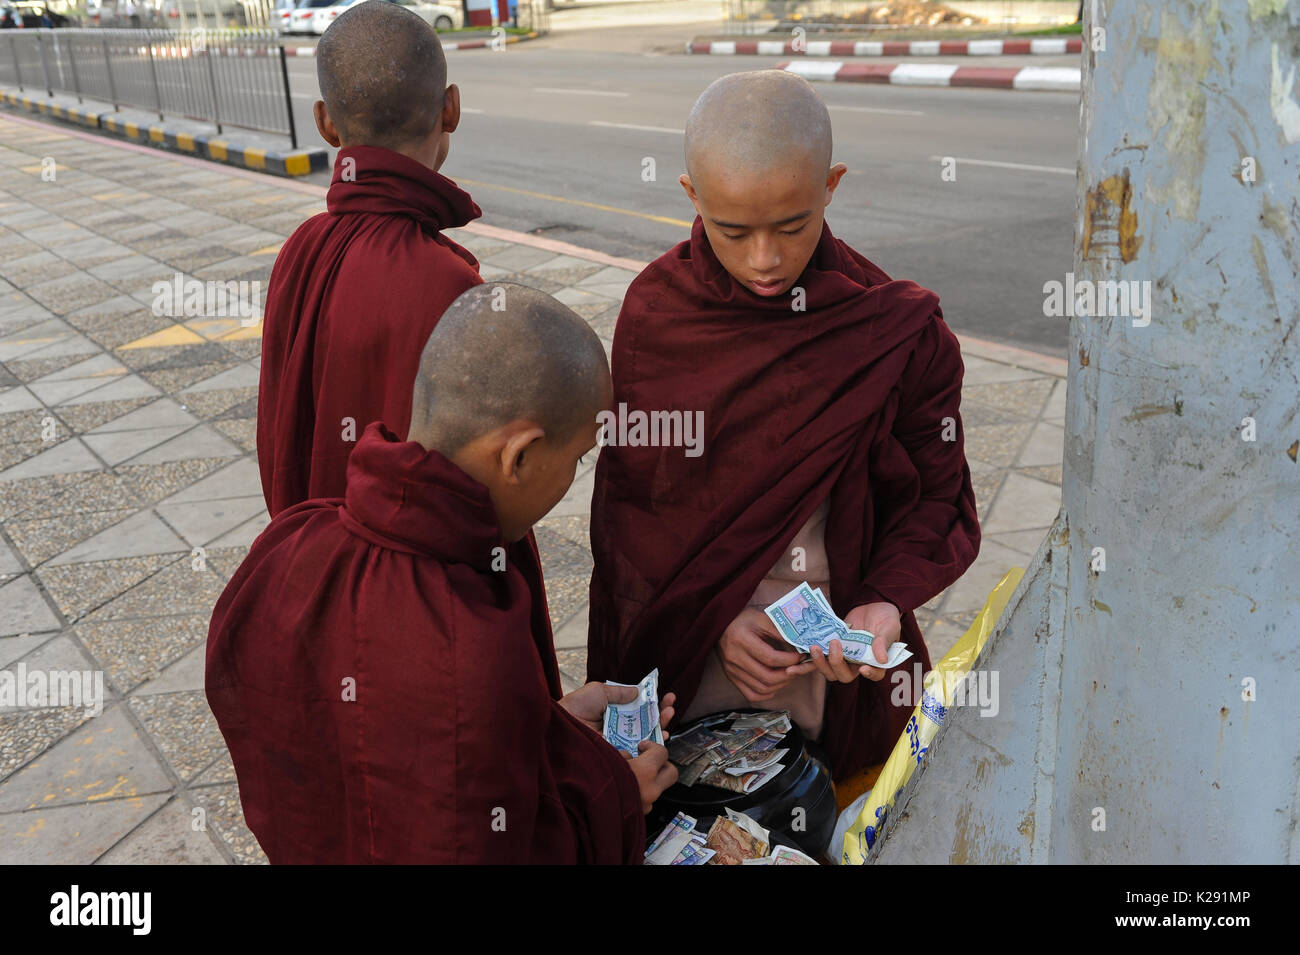 19.10.2013, Yangon, Repubblica dell' Unione di Myanmar, Asia - Novice i monaci sono visto in corrispondenza di un incrocio stradale contando le erogazioni liberali in denaro. Foto Stock